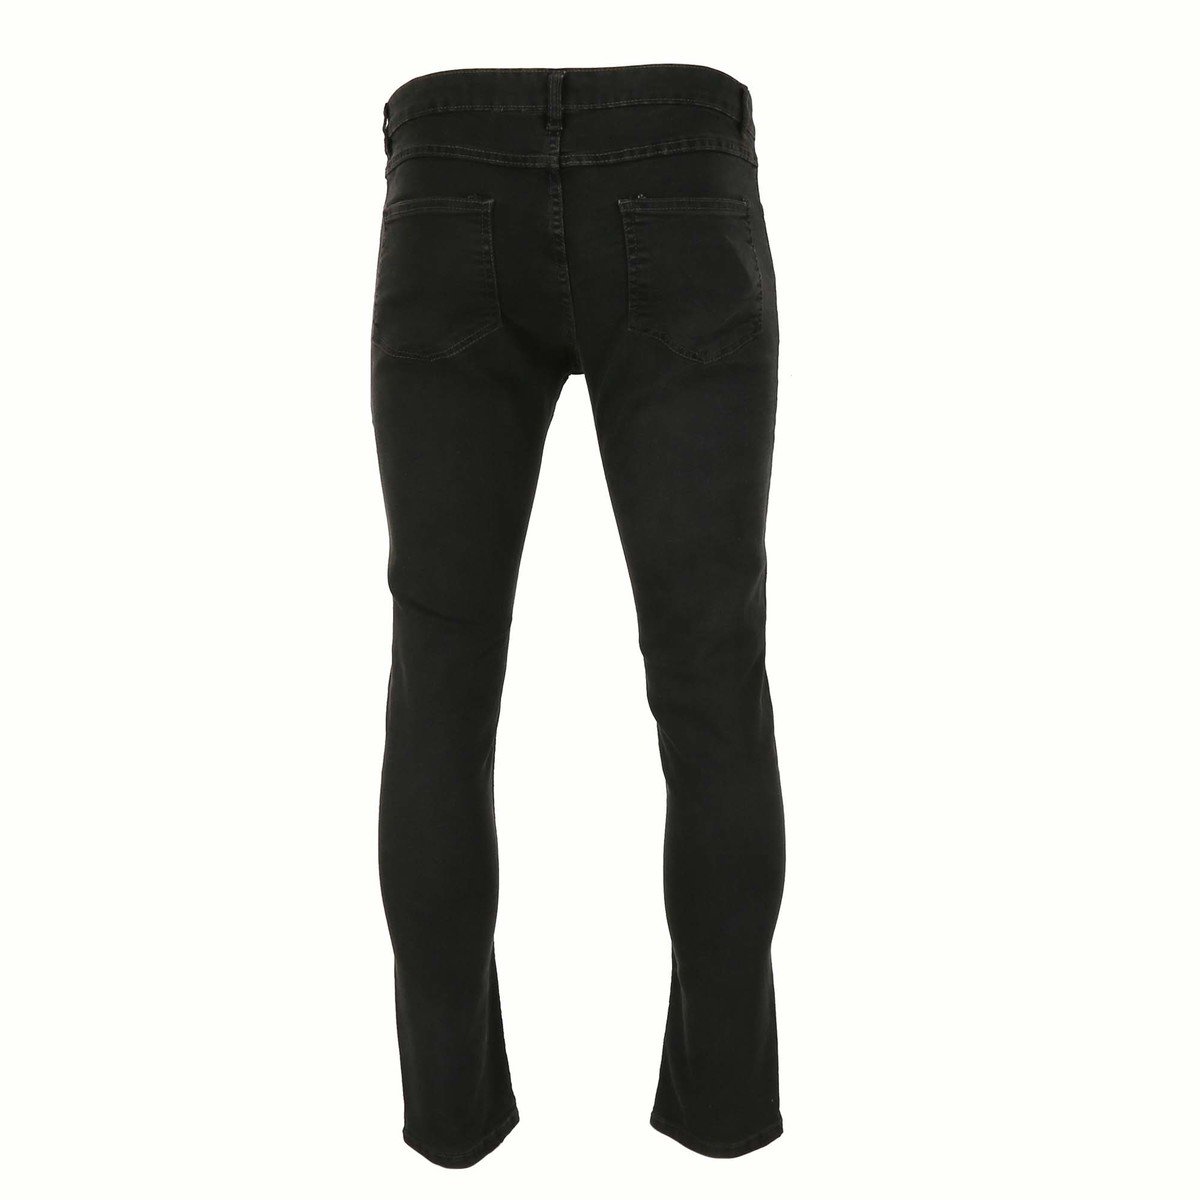 Reo Men's Denim Slim Fit Jeans BOM570C, DK.GREY 34